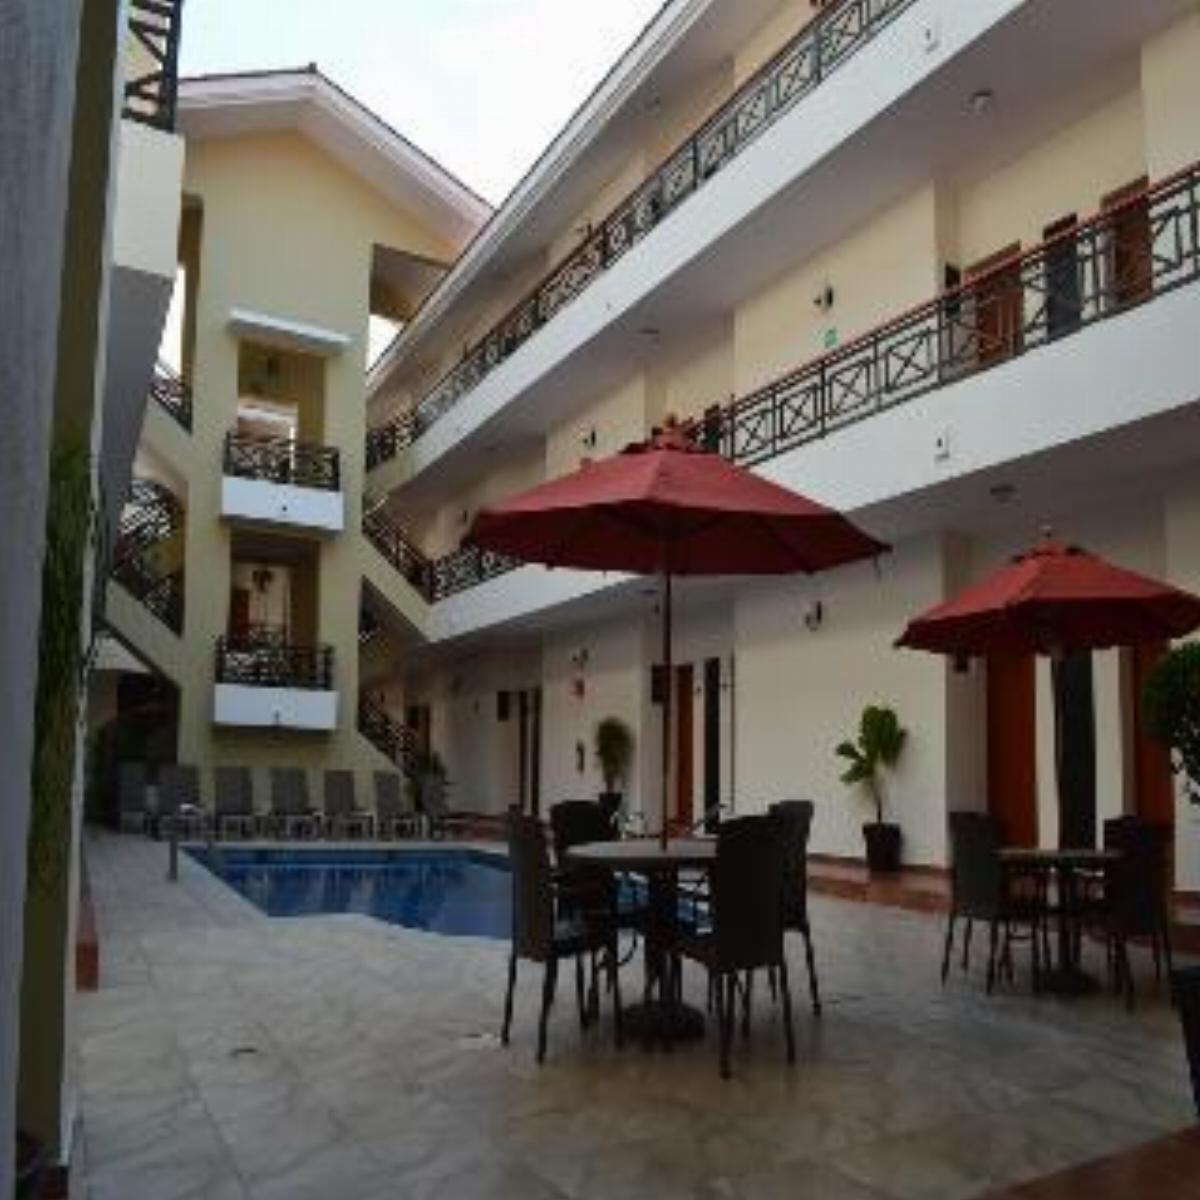 Concierge Plaza La Villa Hotel Colima Mexico